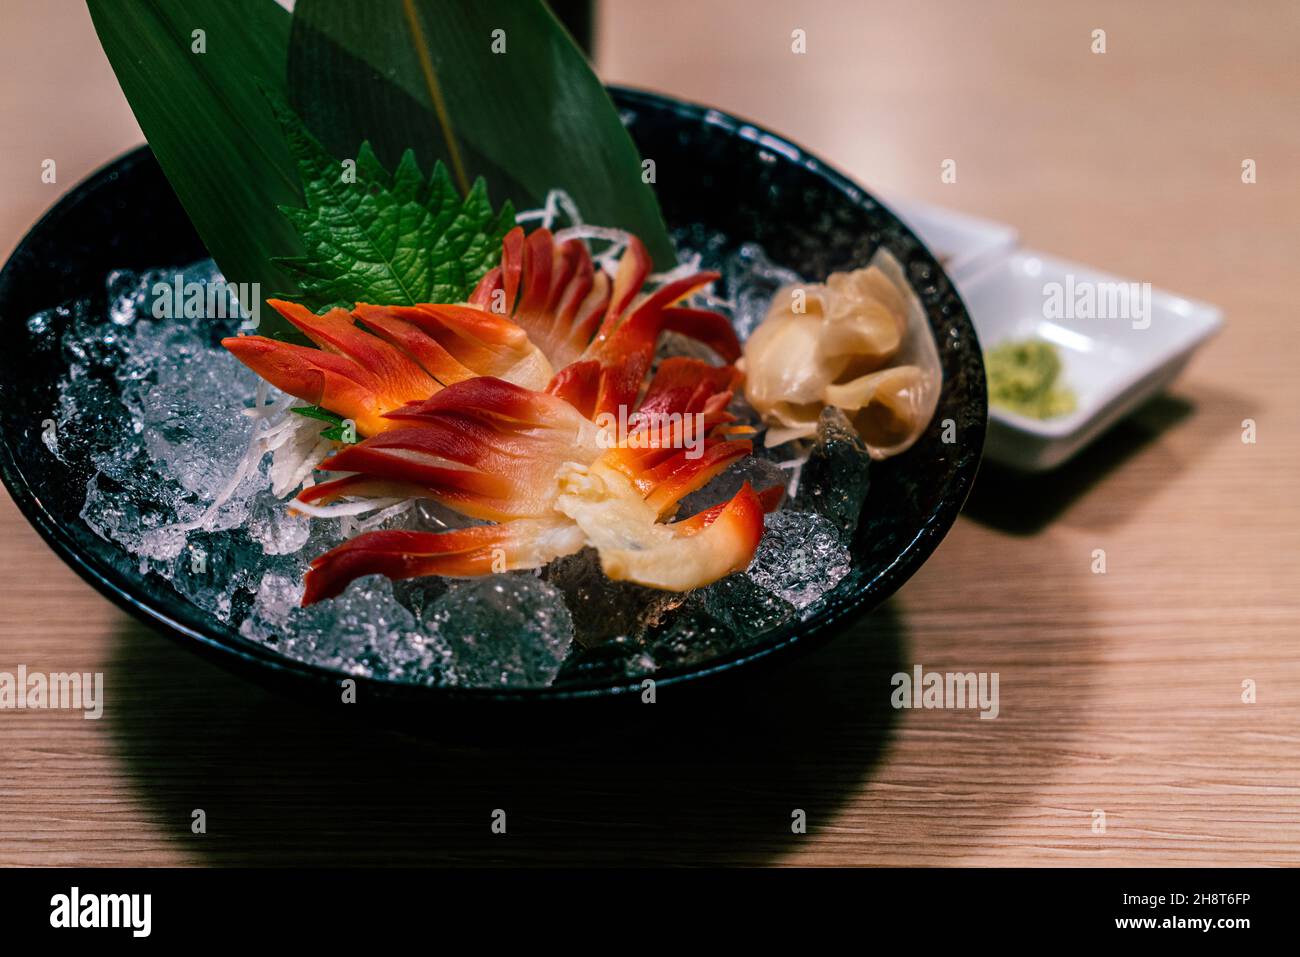 Japanische Stimpson Surf Clam oder Clam Ritzel oder hokkigai Sashimi mit Eis und Glas schwarzen Schale auf dem Tisch. Frische rohe Meeresfrüchte von japanischer gesunder Speisekarte. Stockfoto